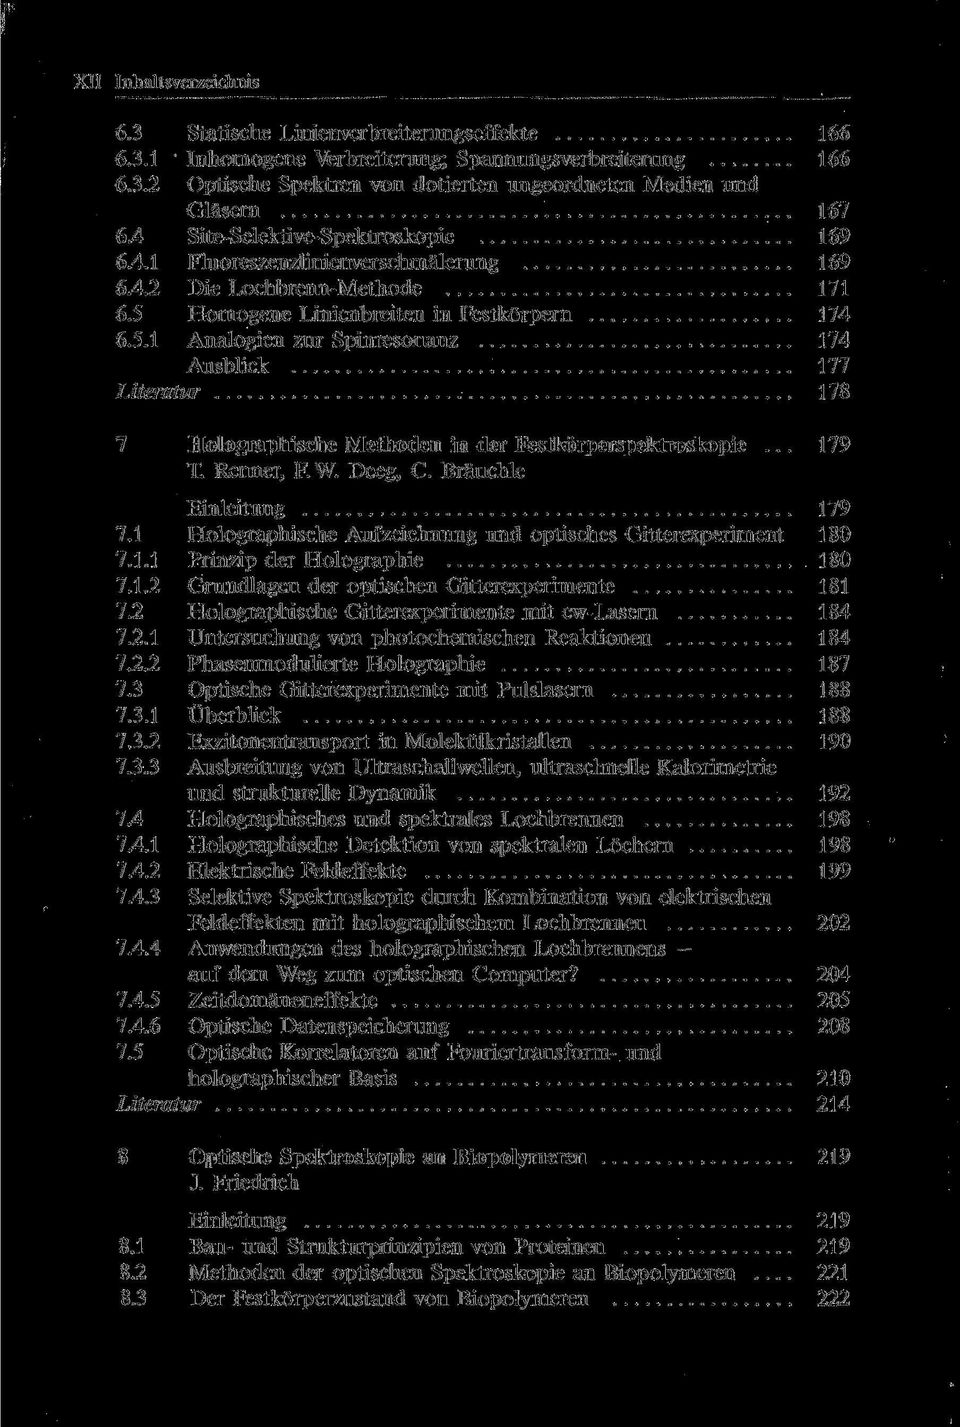 Homogene Linienbreiten in Festkörpern 174 6.5.1 Analogien zur Spinresonanz 174 Ausblick 177 Literatur 178 7 Holographische Methoden in der Festkörperspektroskopie... 179 T. Renner, F.W. Deeg, C.